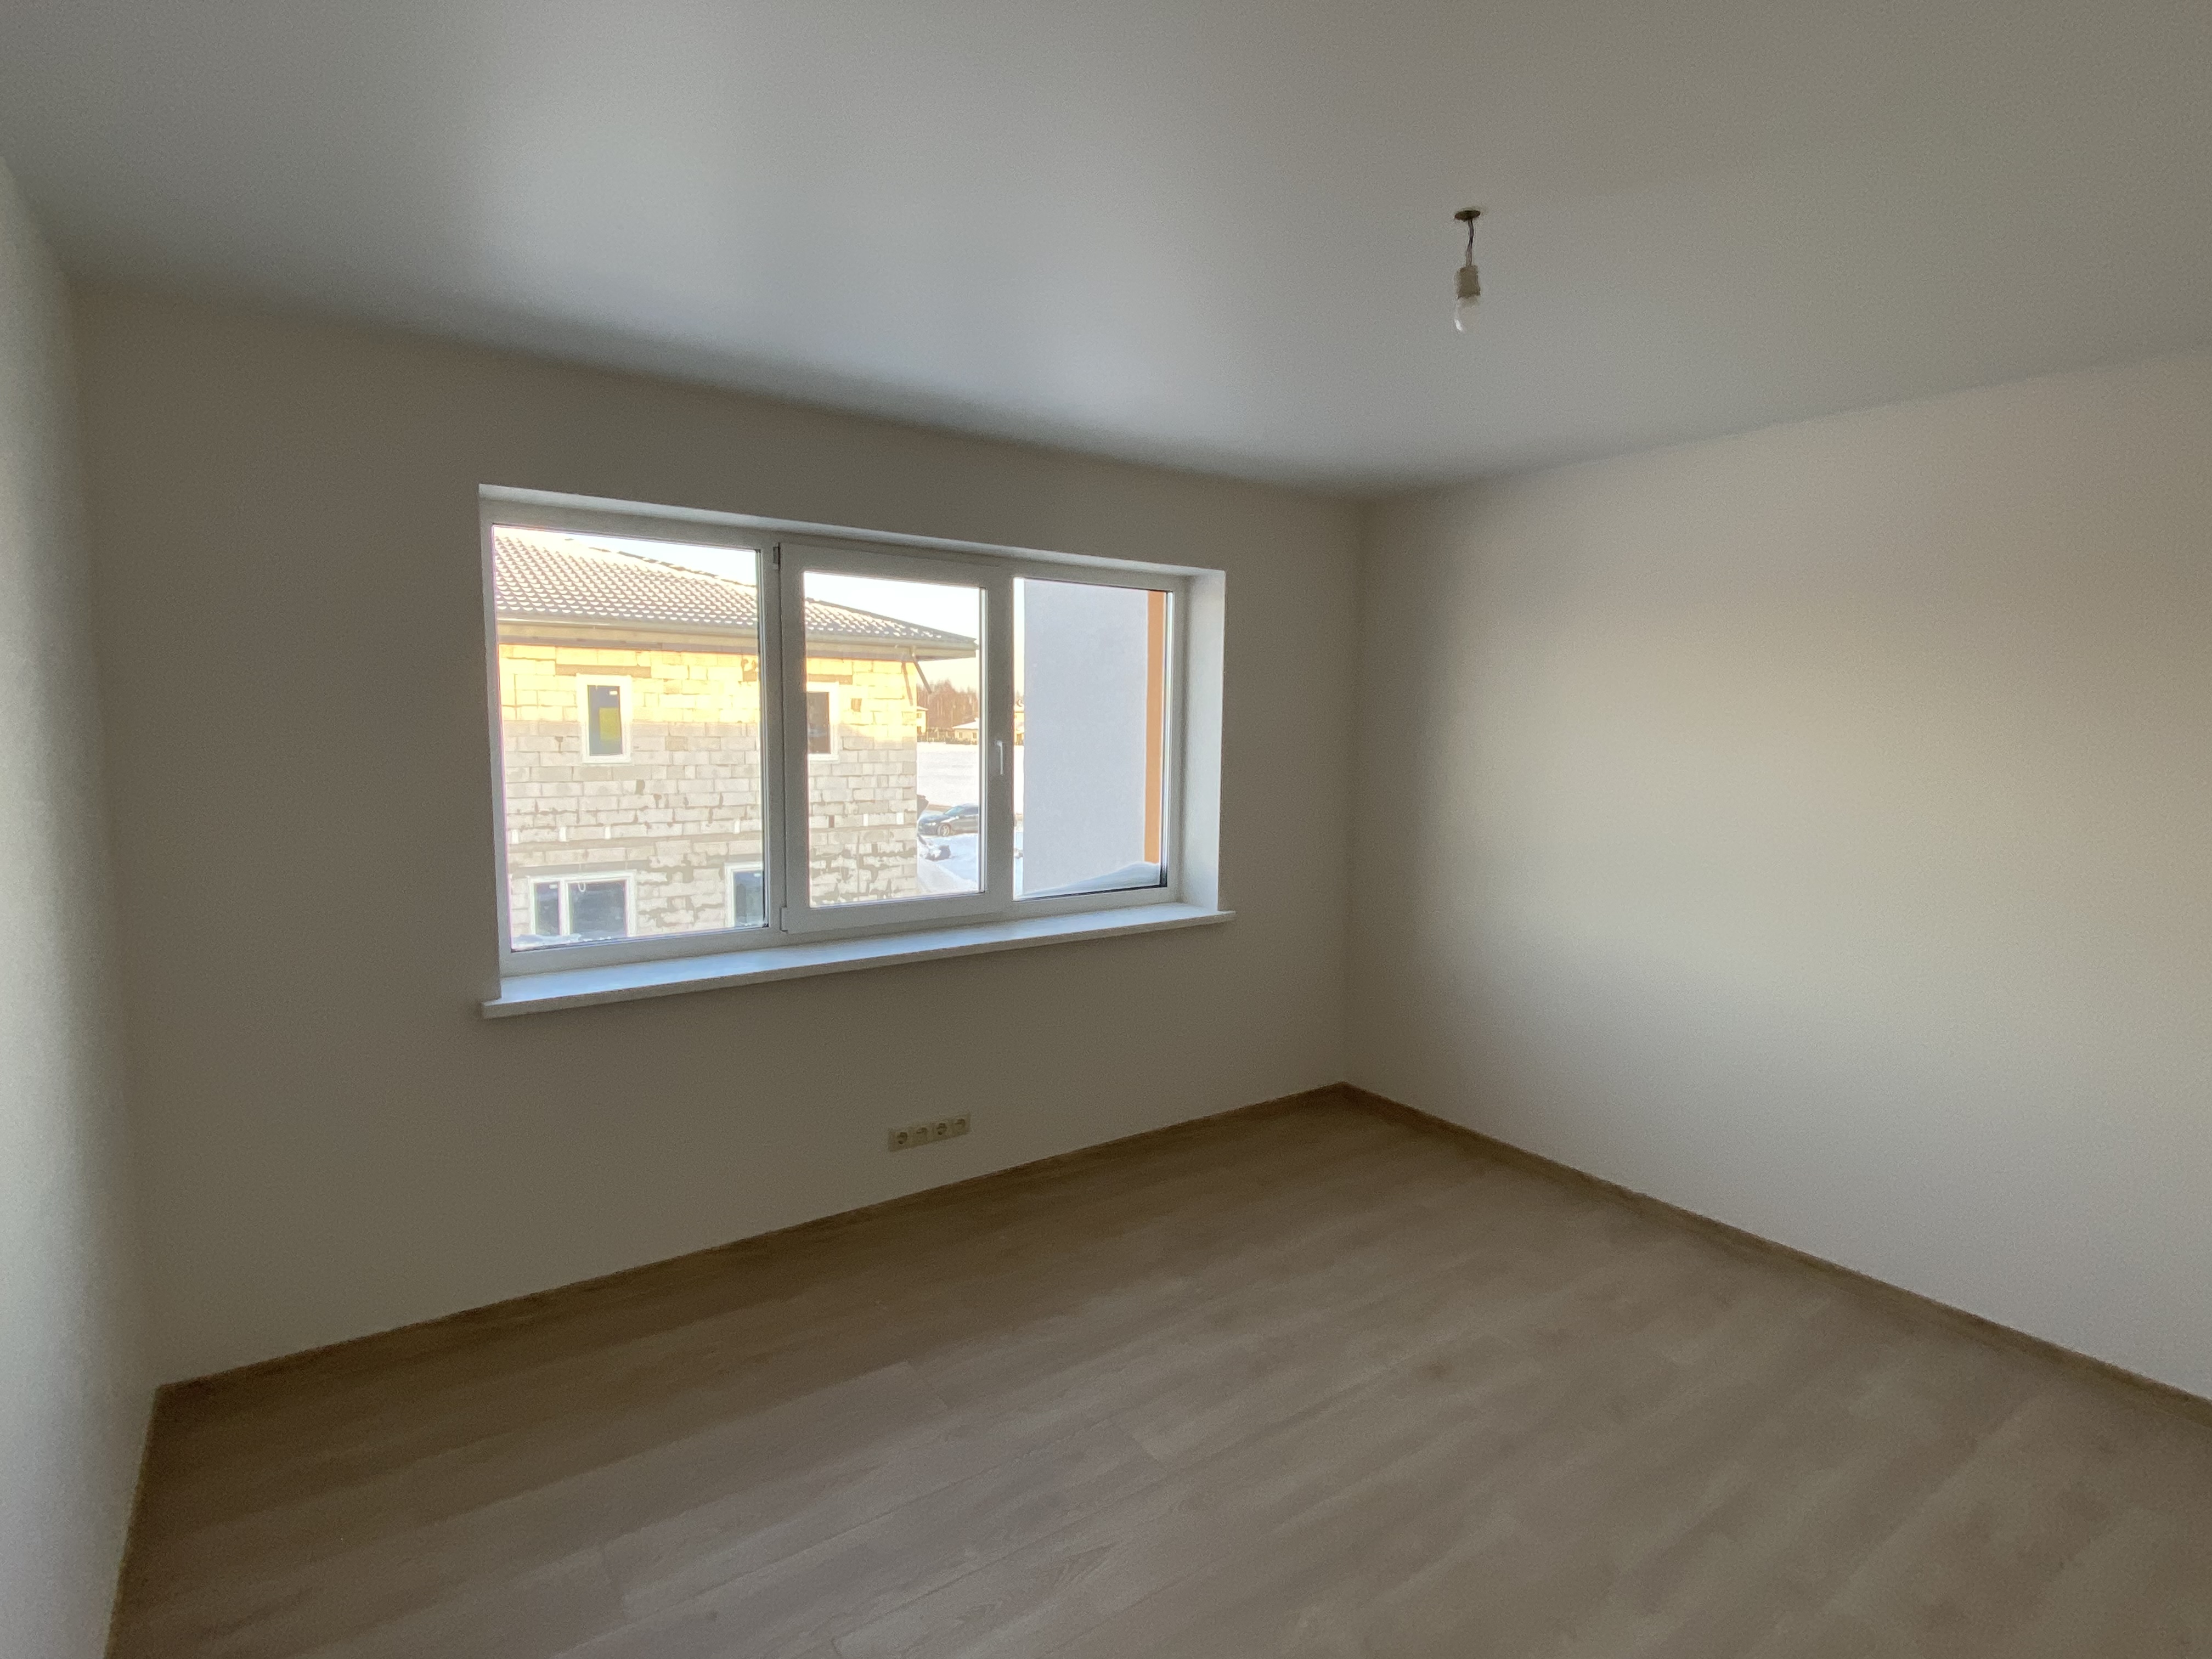 Apartment for sale, Lībiešu street 9 - Image 1